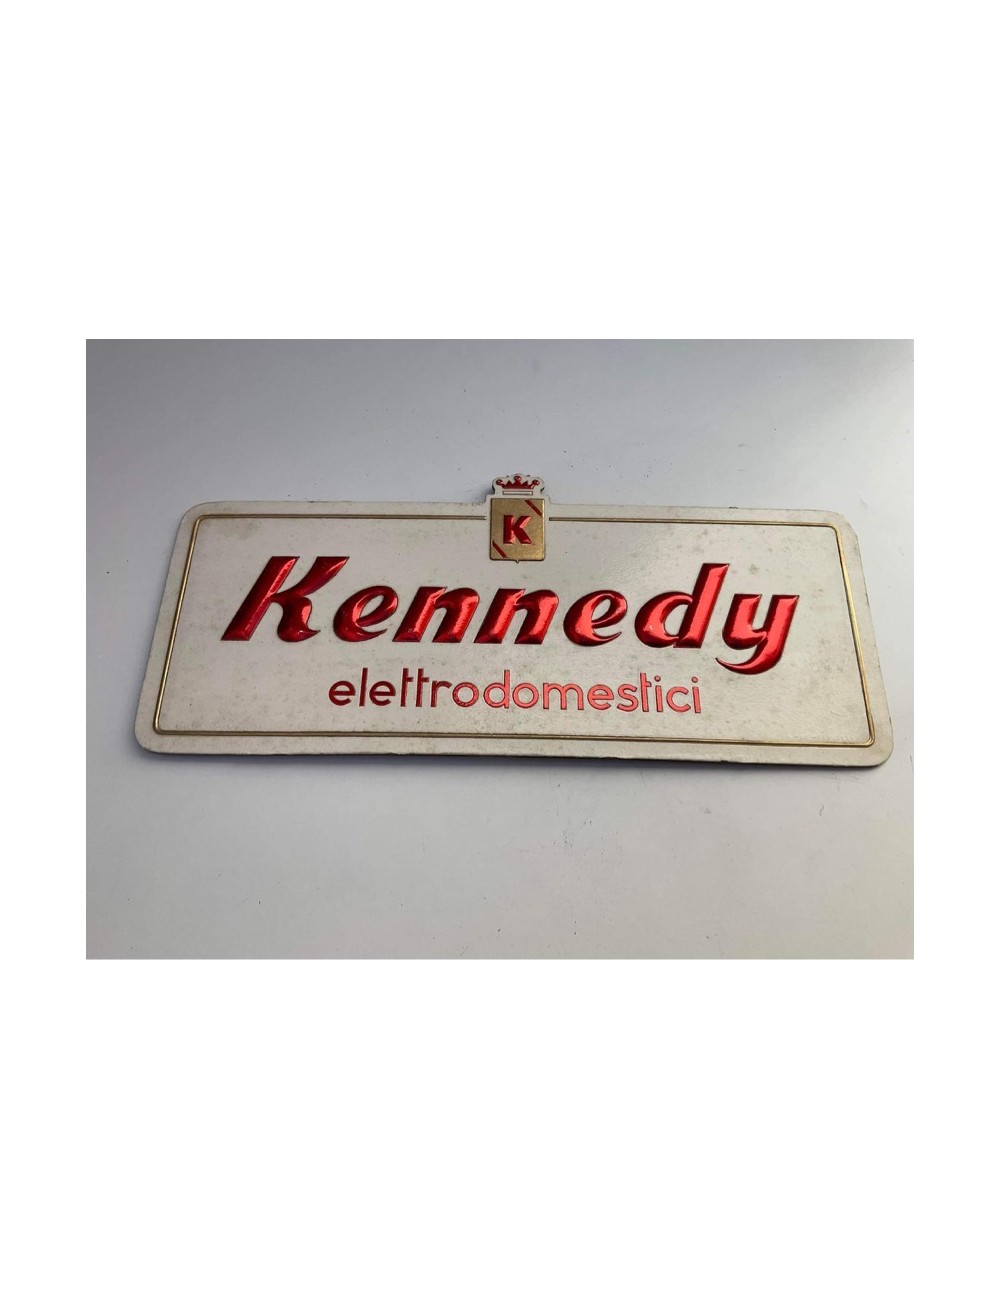 Cartone pubblicitario Kennedy-Elettrodomestici. Dimensioni : 30 cm x 13 cm